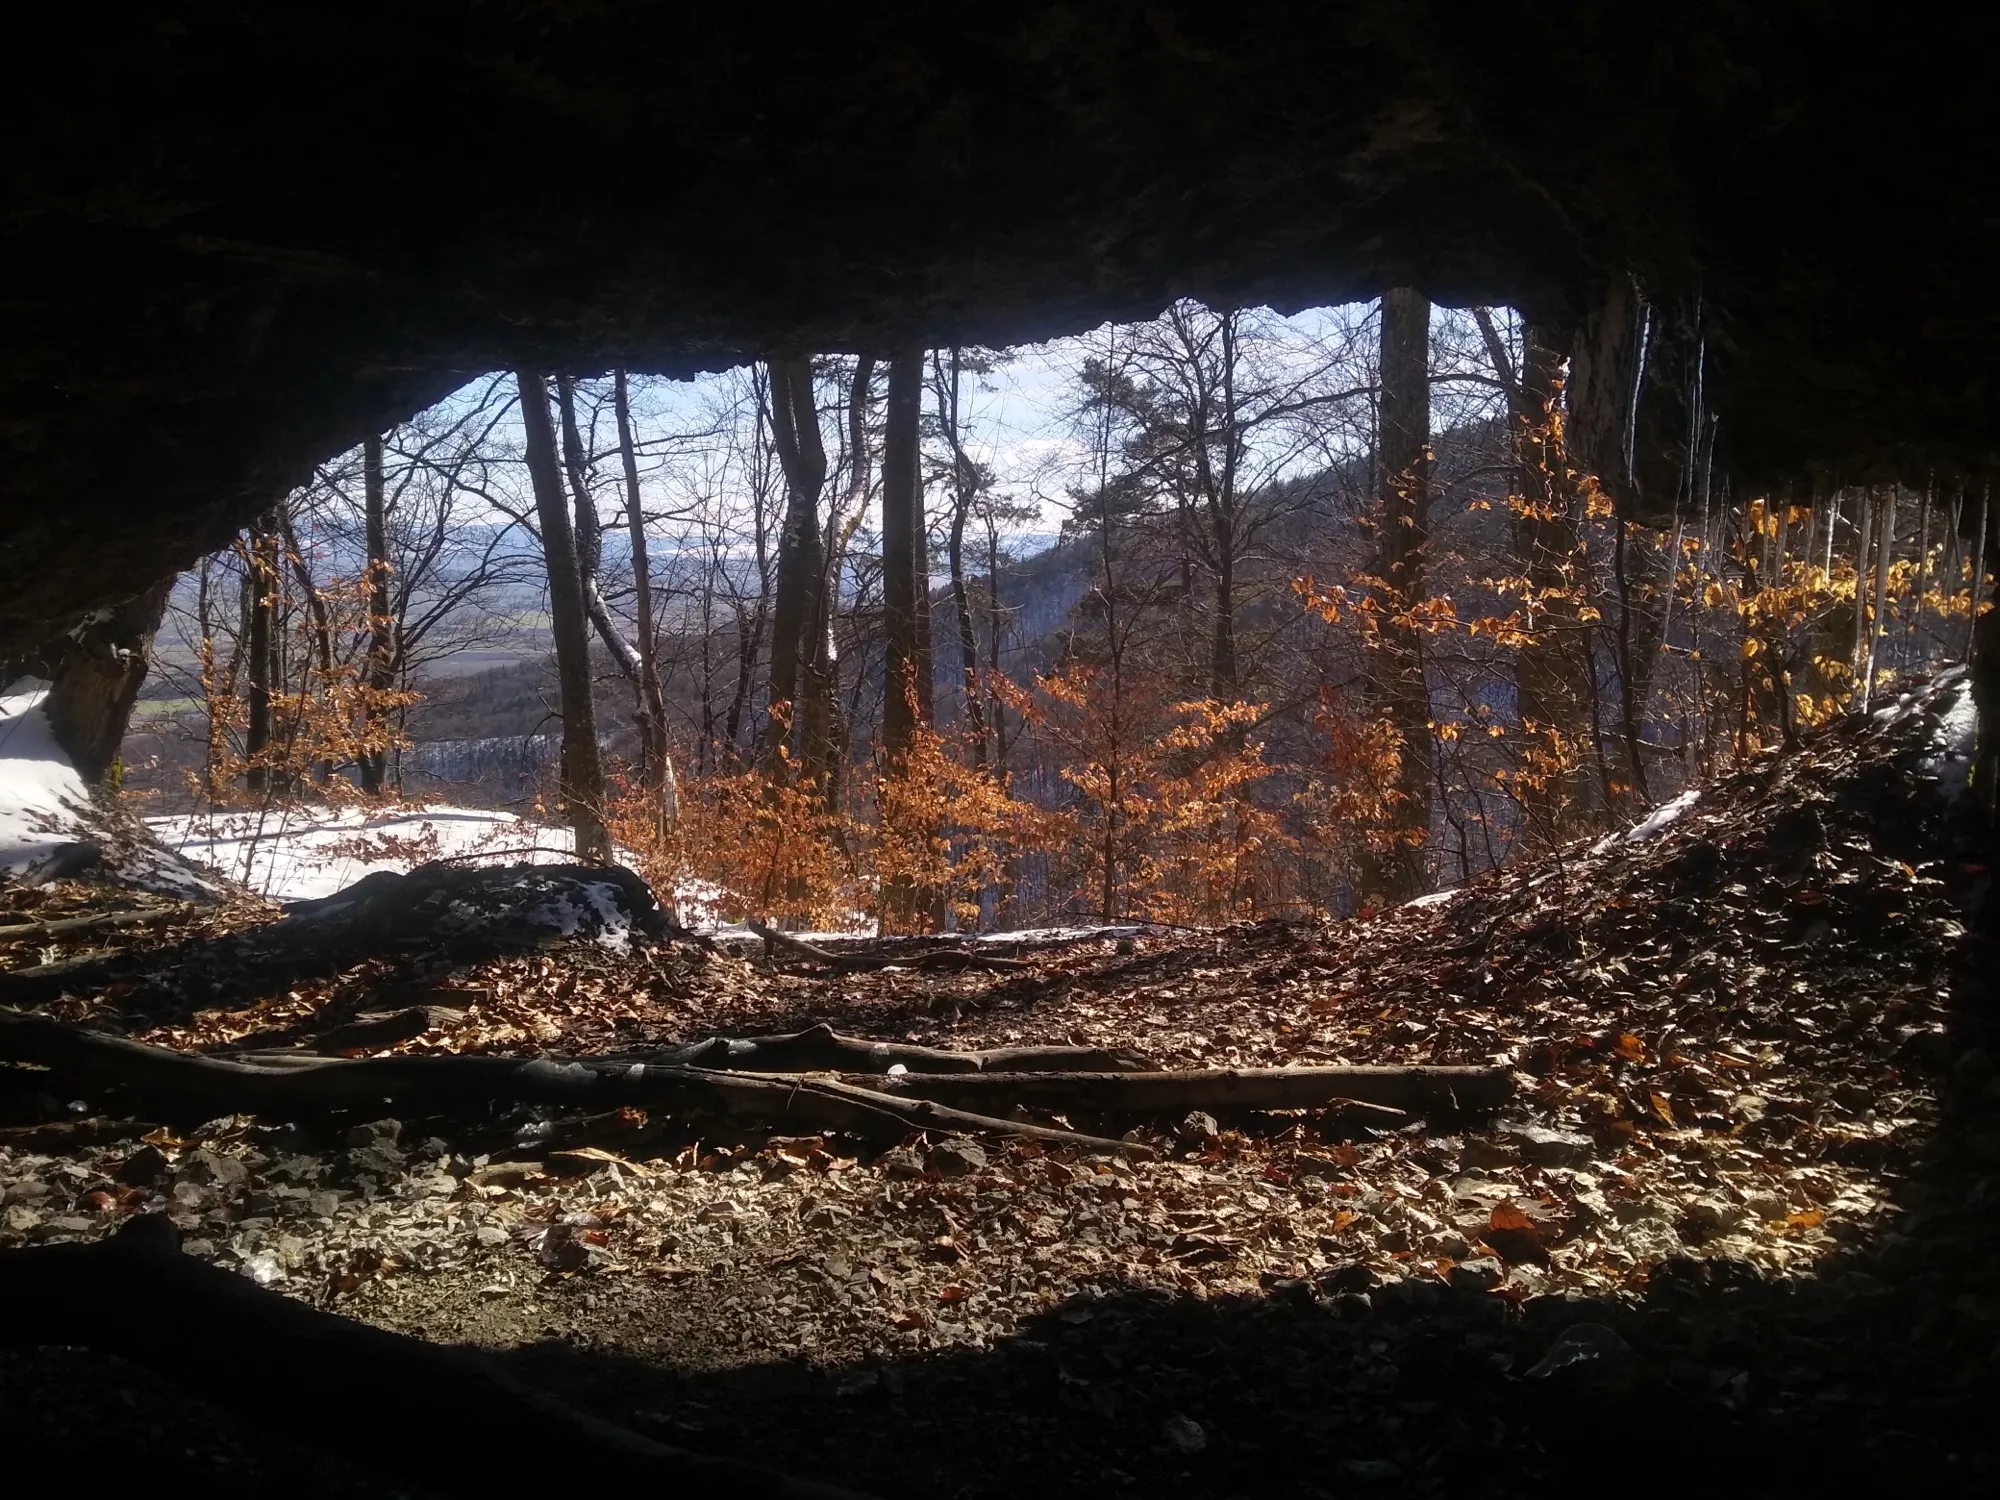 Jaskyna a vyhlad z nej do lesa